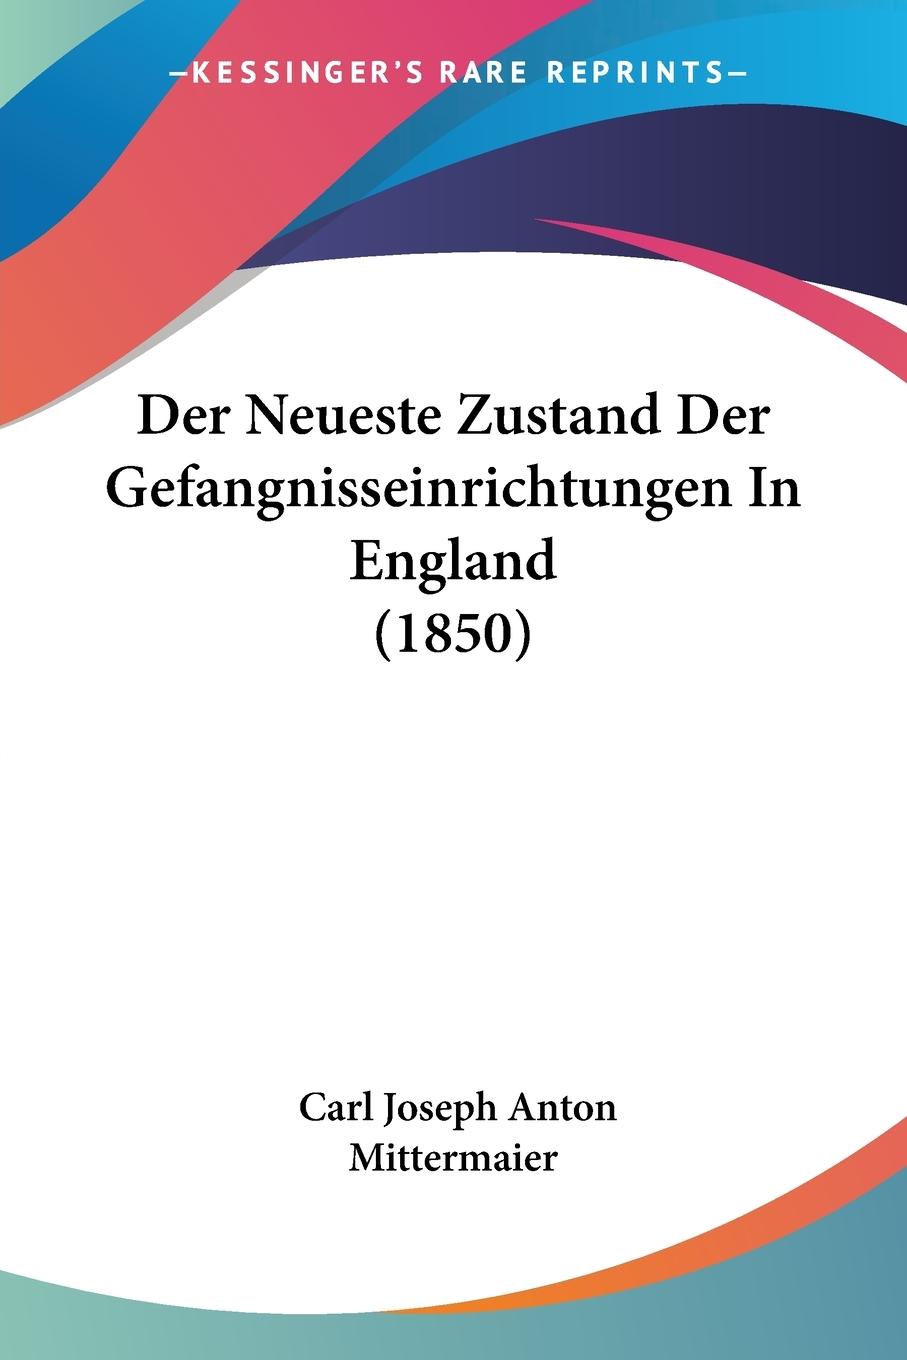 Der Neueste Zustand Der Gefangnisseinrichtungen In England (1850) - Mittermaier, Carl Joseph Anton